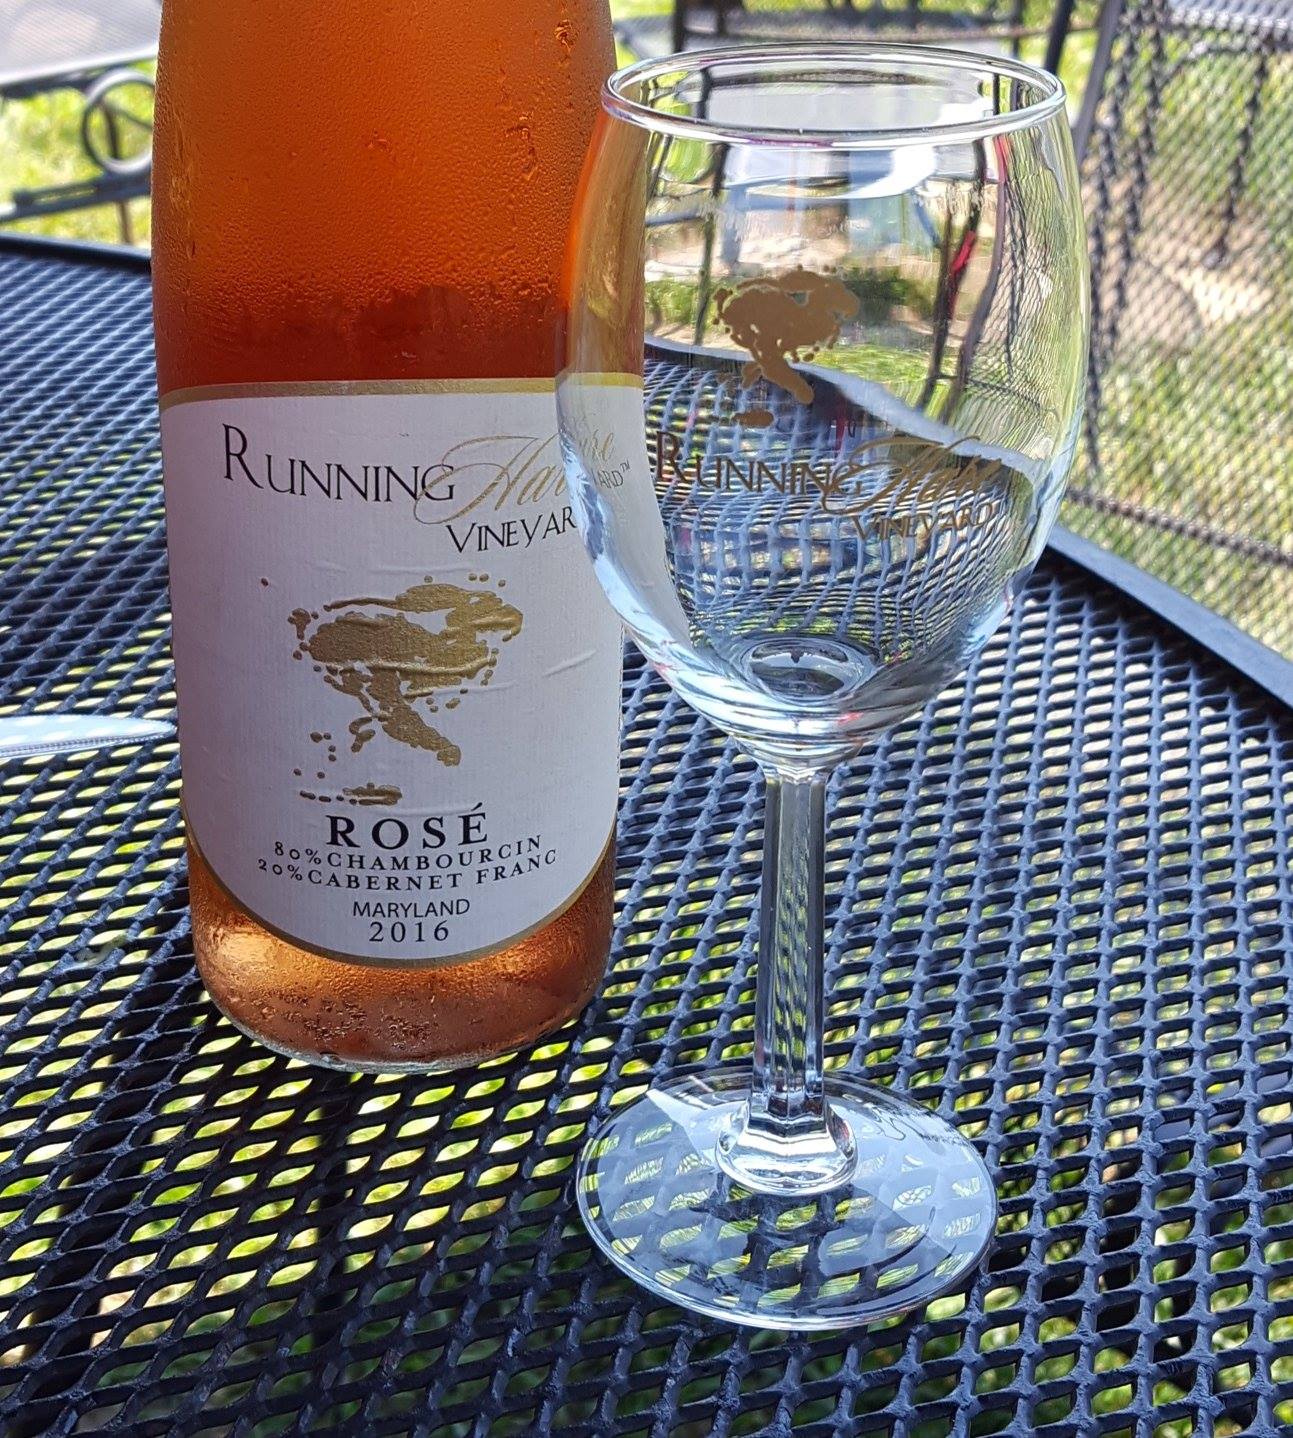 July 4th weekend, rose, vineyard, wine glass